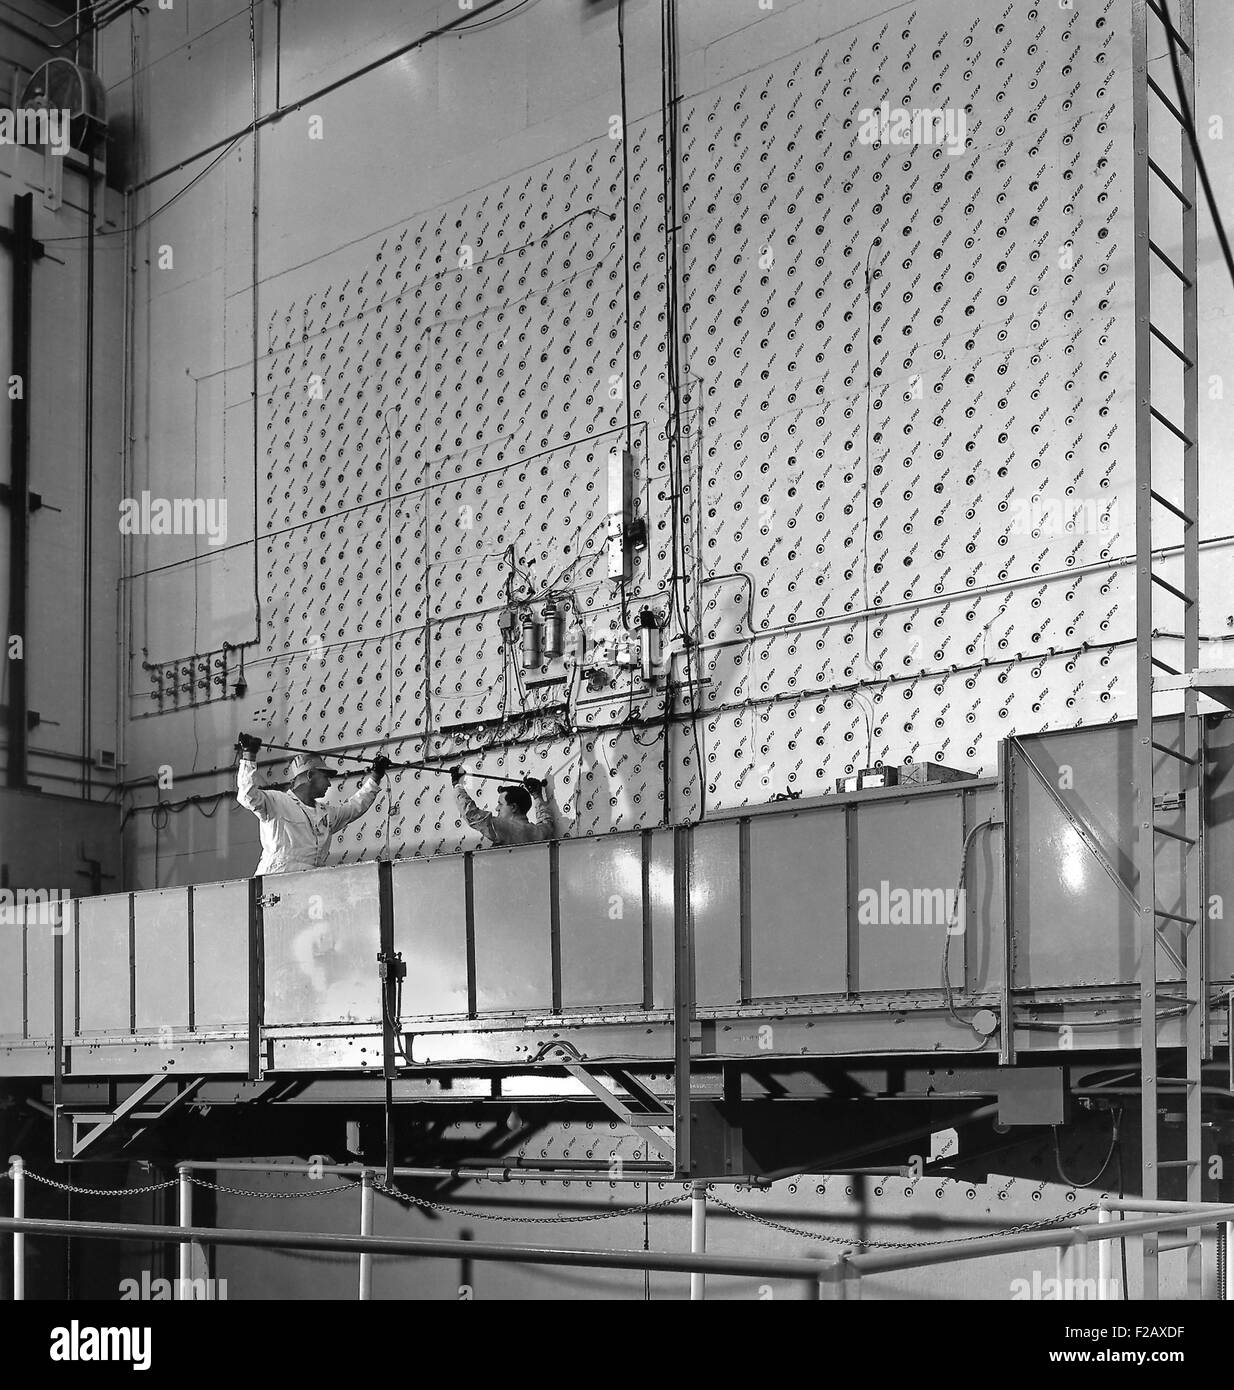 X-10 grafito del reactor fue el segundo reactor nuclear artificial. La foto muestra el x-10's rostro concreto en Oak Ridge National Laboratory. Después de WW2, el reactor de grafito se convirtió en el primer centro del mundo para proveer de isótopos radiactivos para uso en tiempos de paz. Produjo los isótopos de yodo-131, fósforo-32 y carbono-14, científicas, médicas, industriales y agrícolas. Reactor de grafito X-10 fue cerrada en 1963, después de veinte años de uso. (BSLOC 2015 2 24) Foto de stock